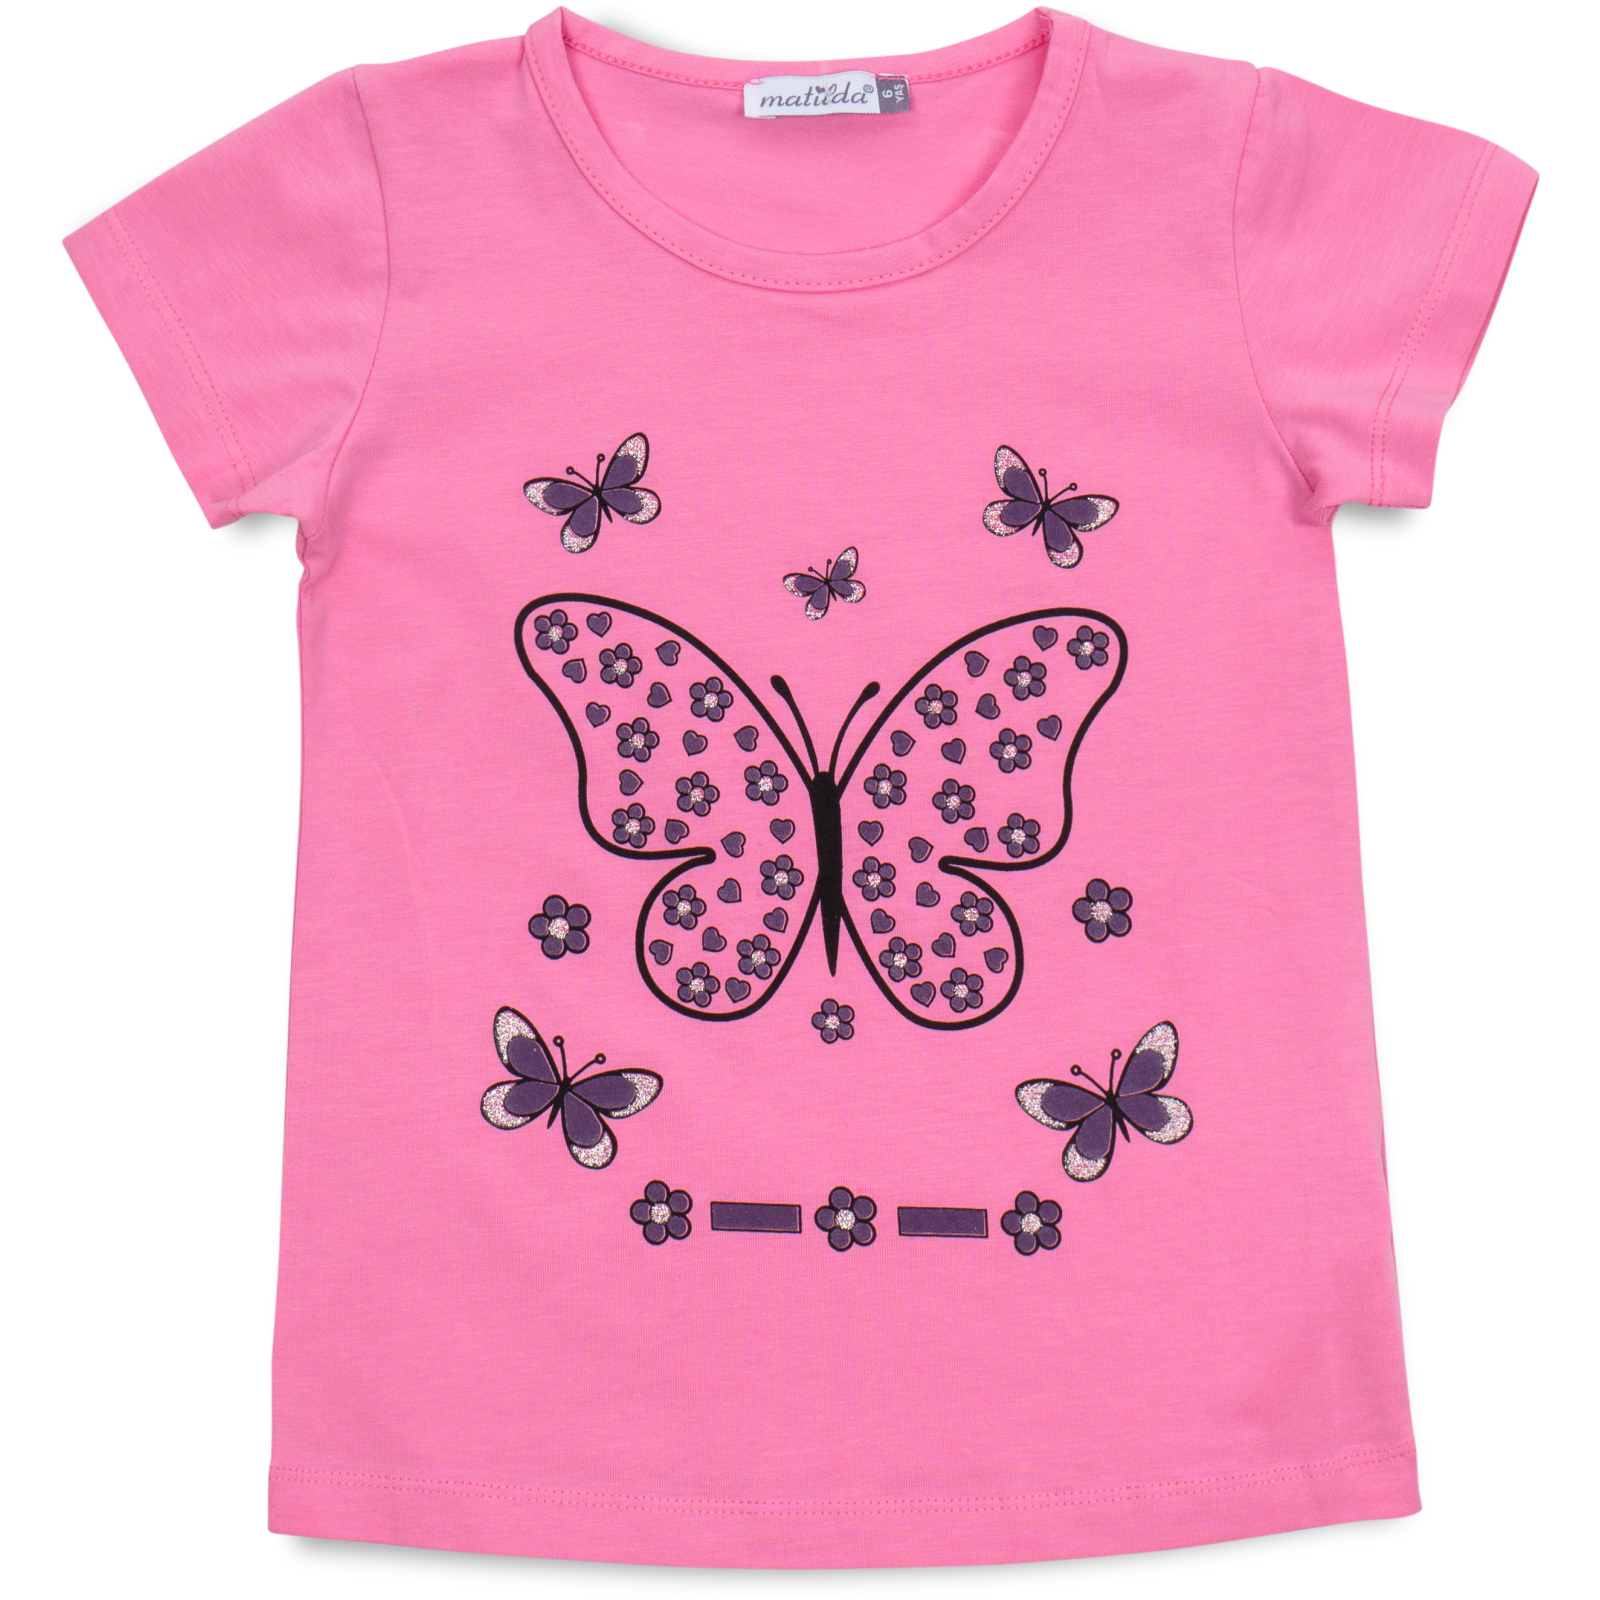 Пижама Matilda с бабочкой (12247-3-116G-pink) изображение 2